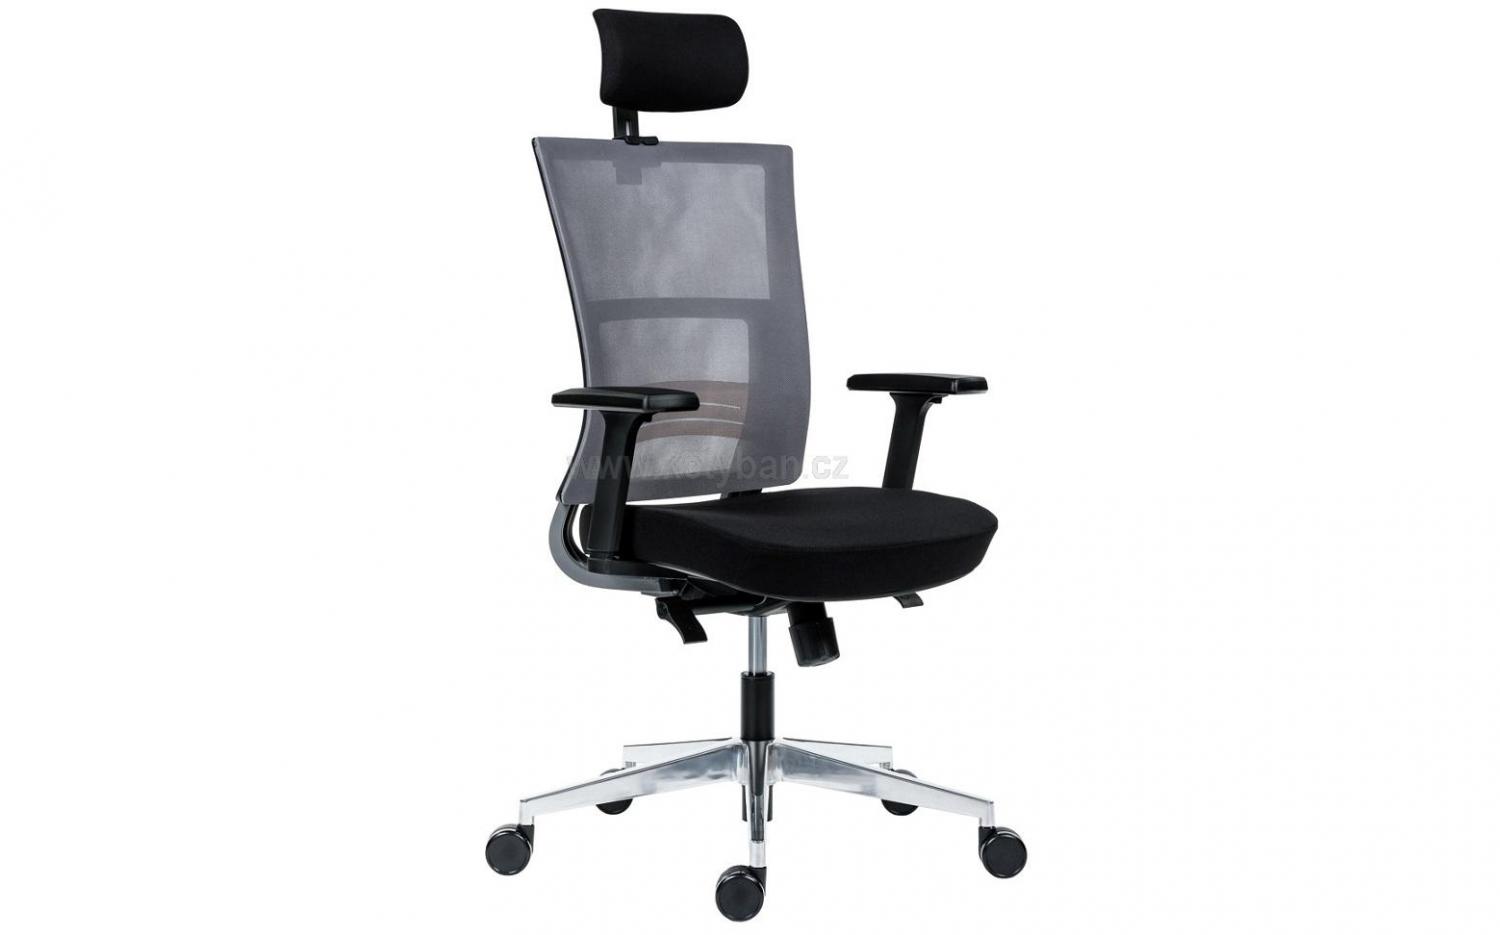 Kancelářská židle Next PDH černá